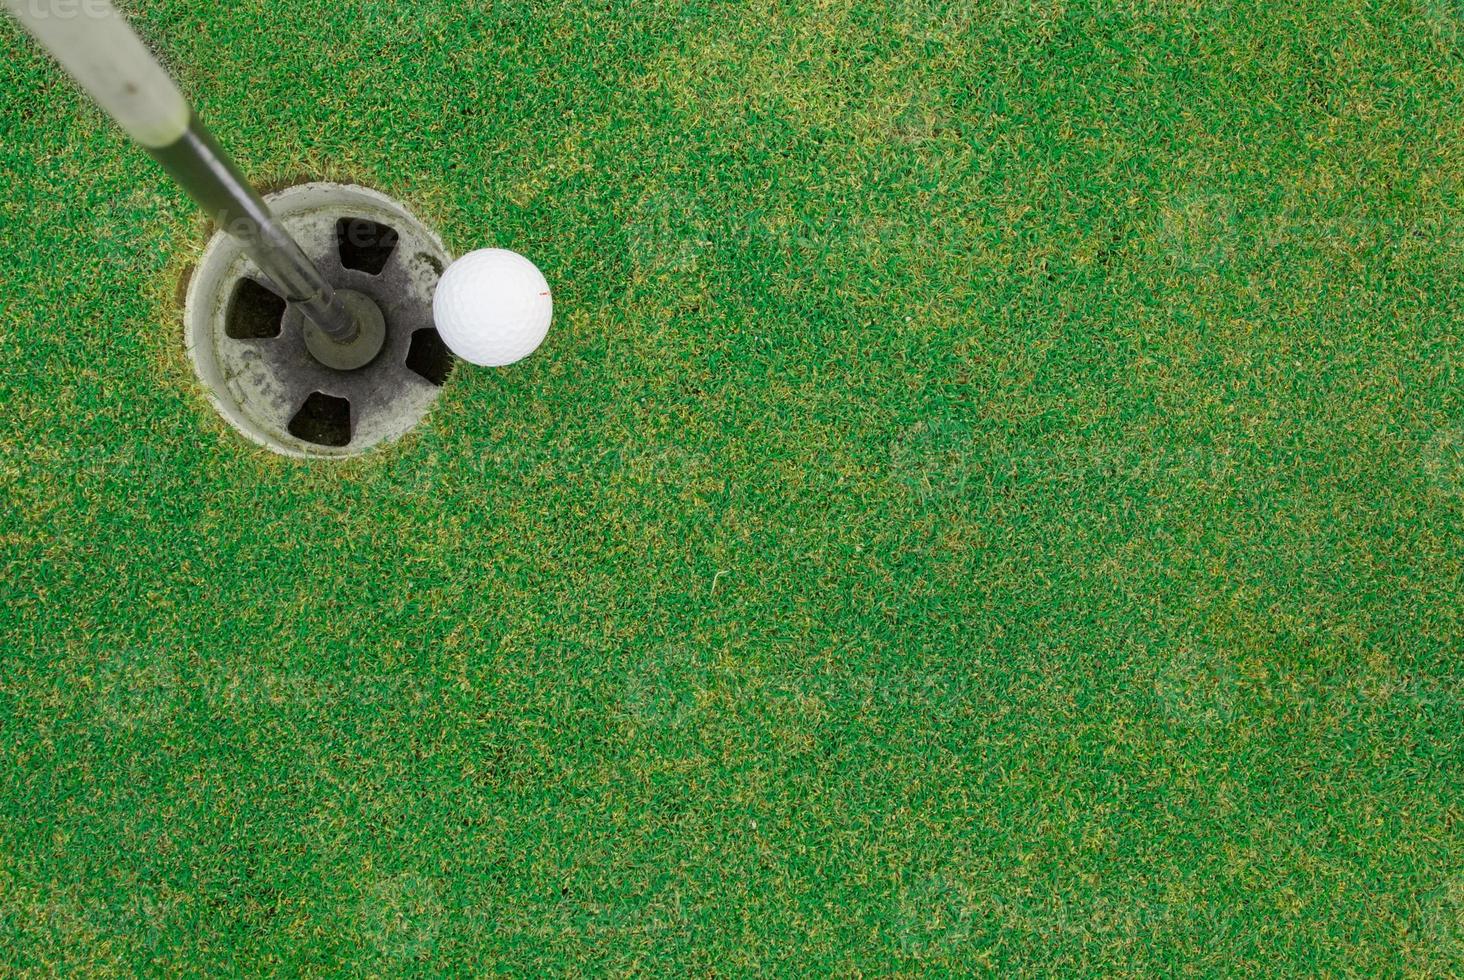 pelota de golf cerca del hoyo foto